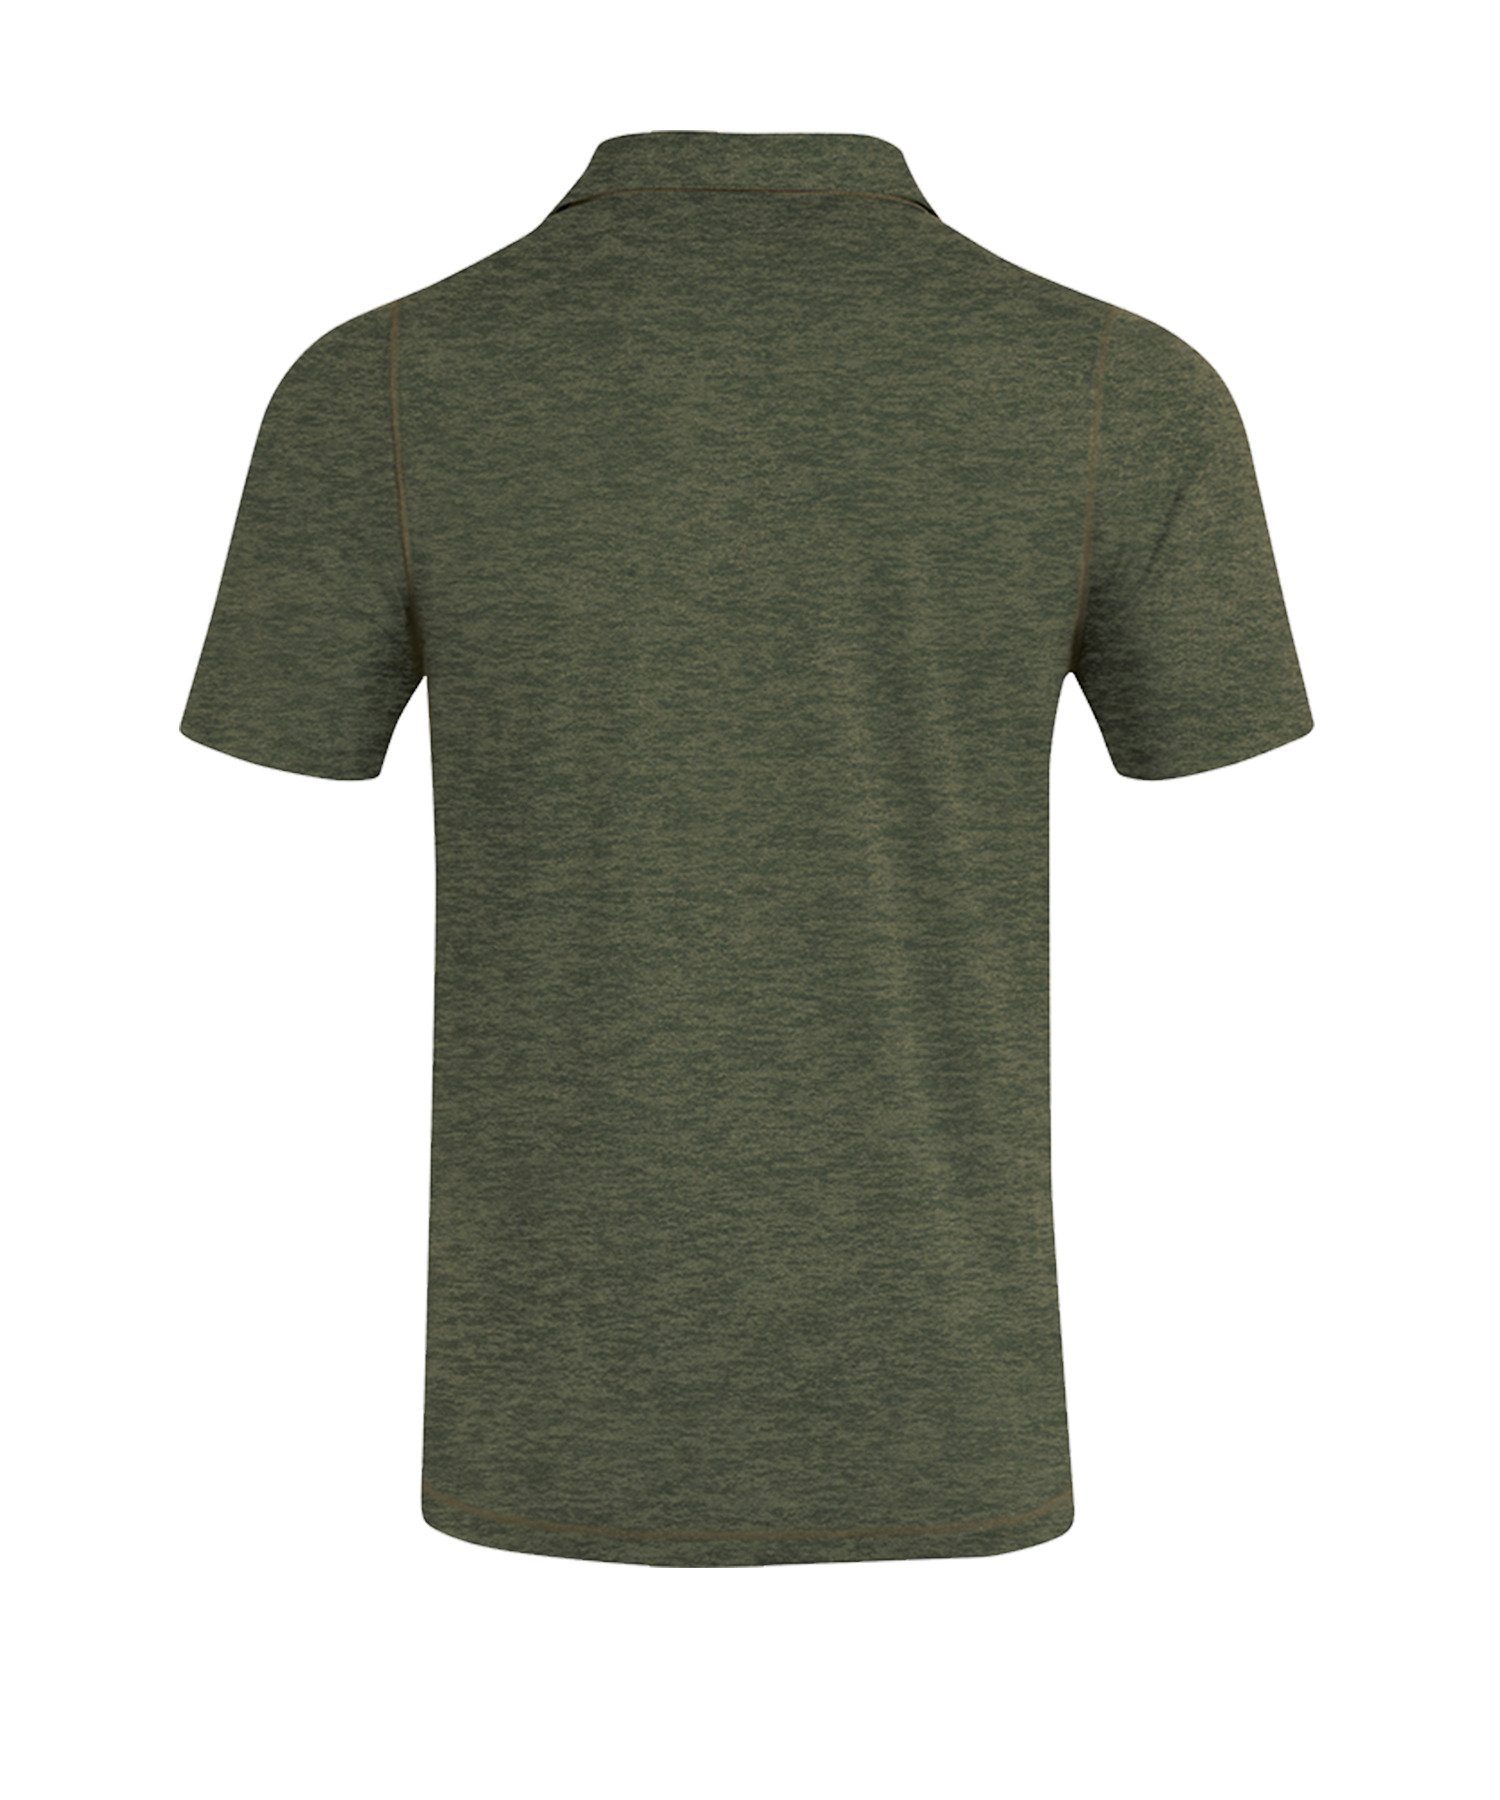 Jako Premium T-Shirt Khaki default Poloshirt Basics